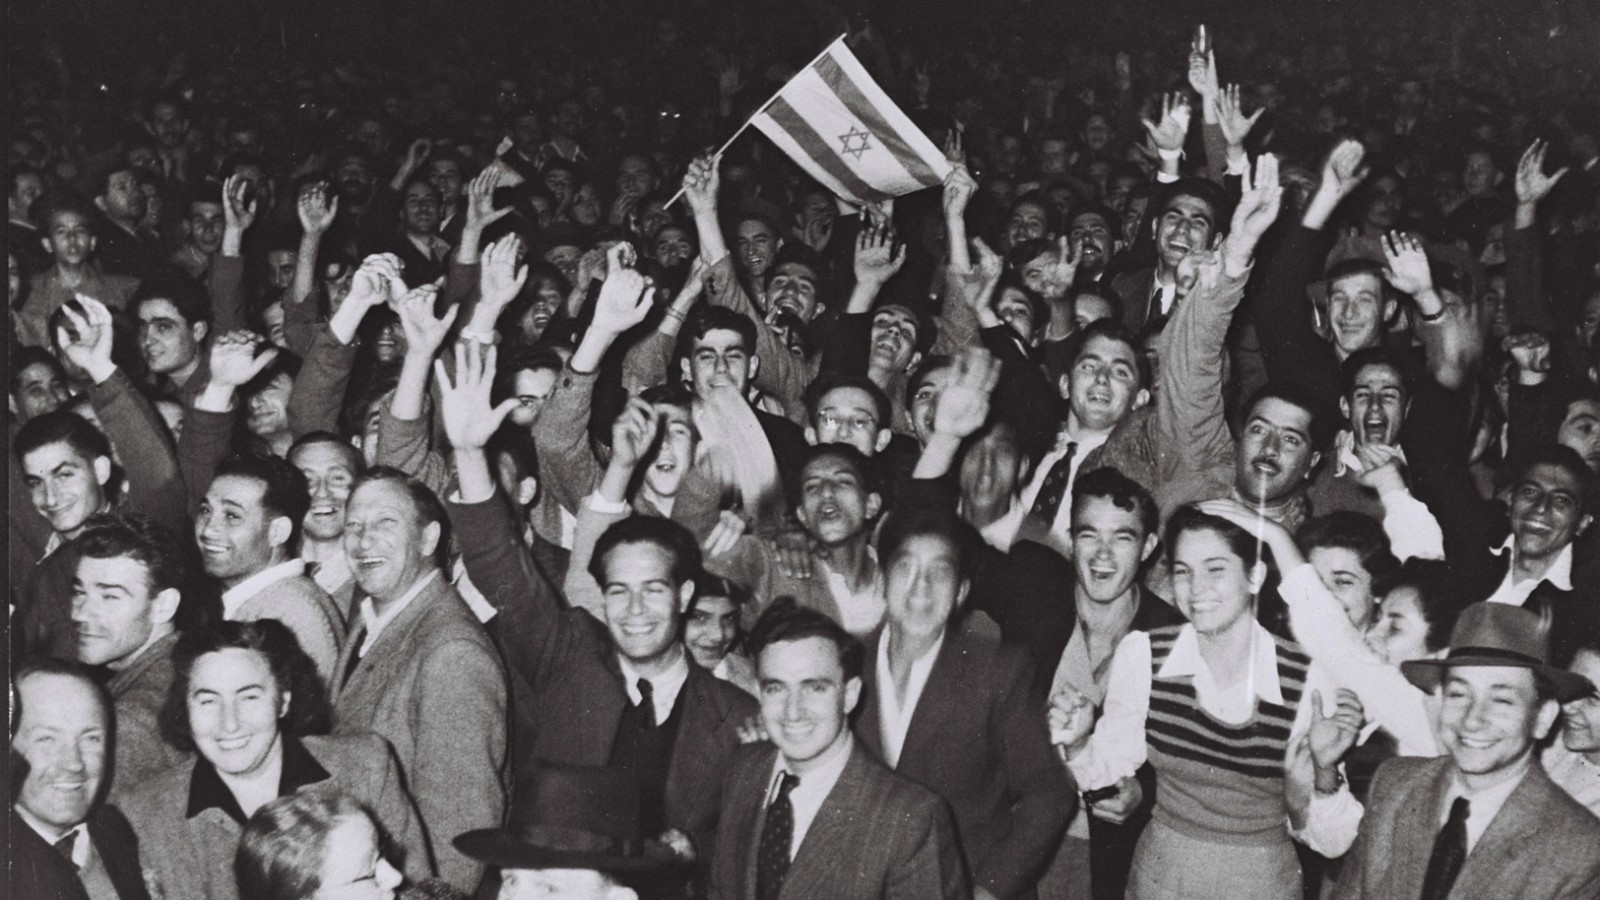 המונים צוהלים ברחובות לאחר הכרזת האו"ם בכ"ט בנובמבר 1947 (צילום: פין הנס, מתוך אוסף התצלומים הלאומי)